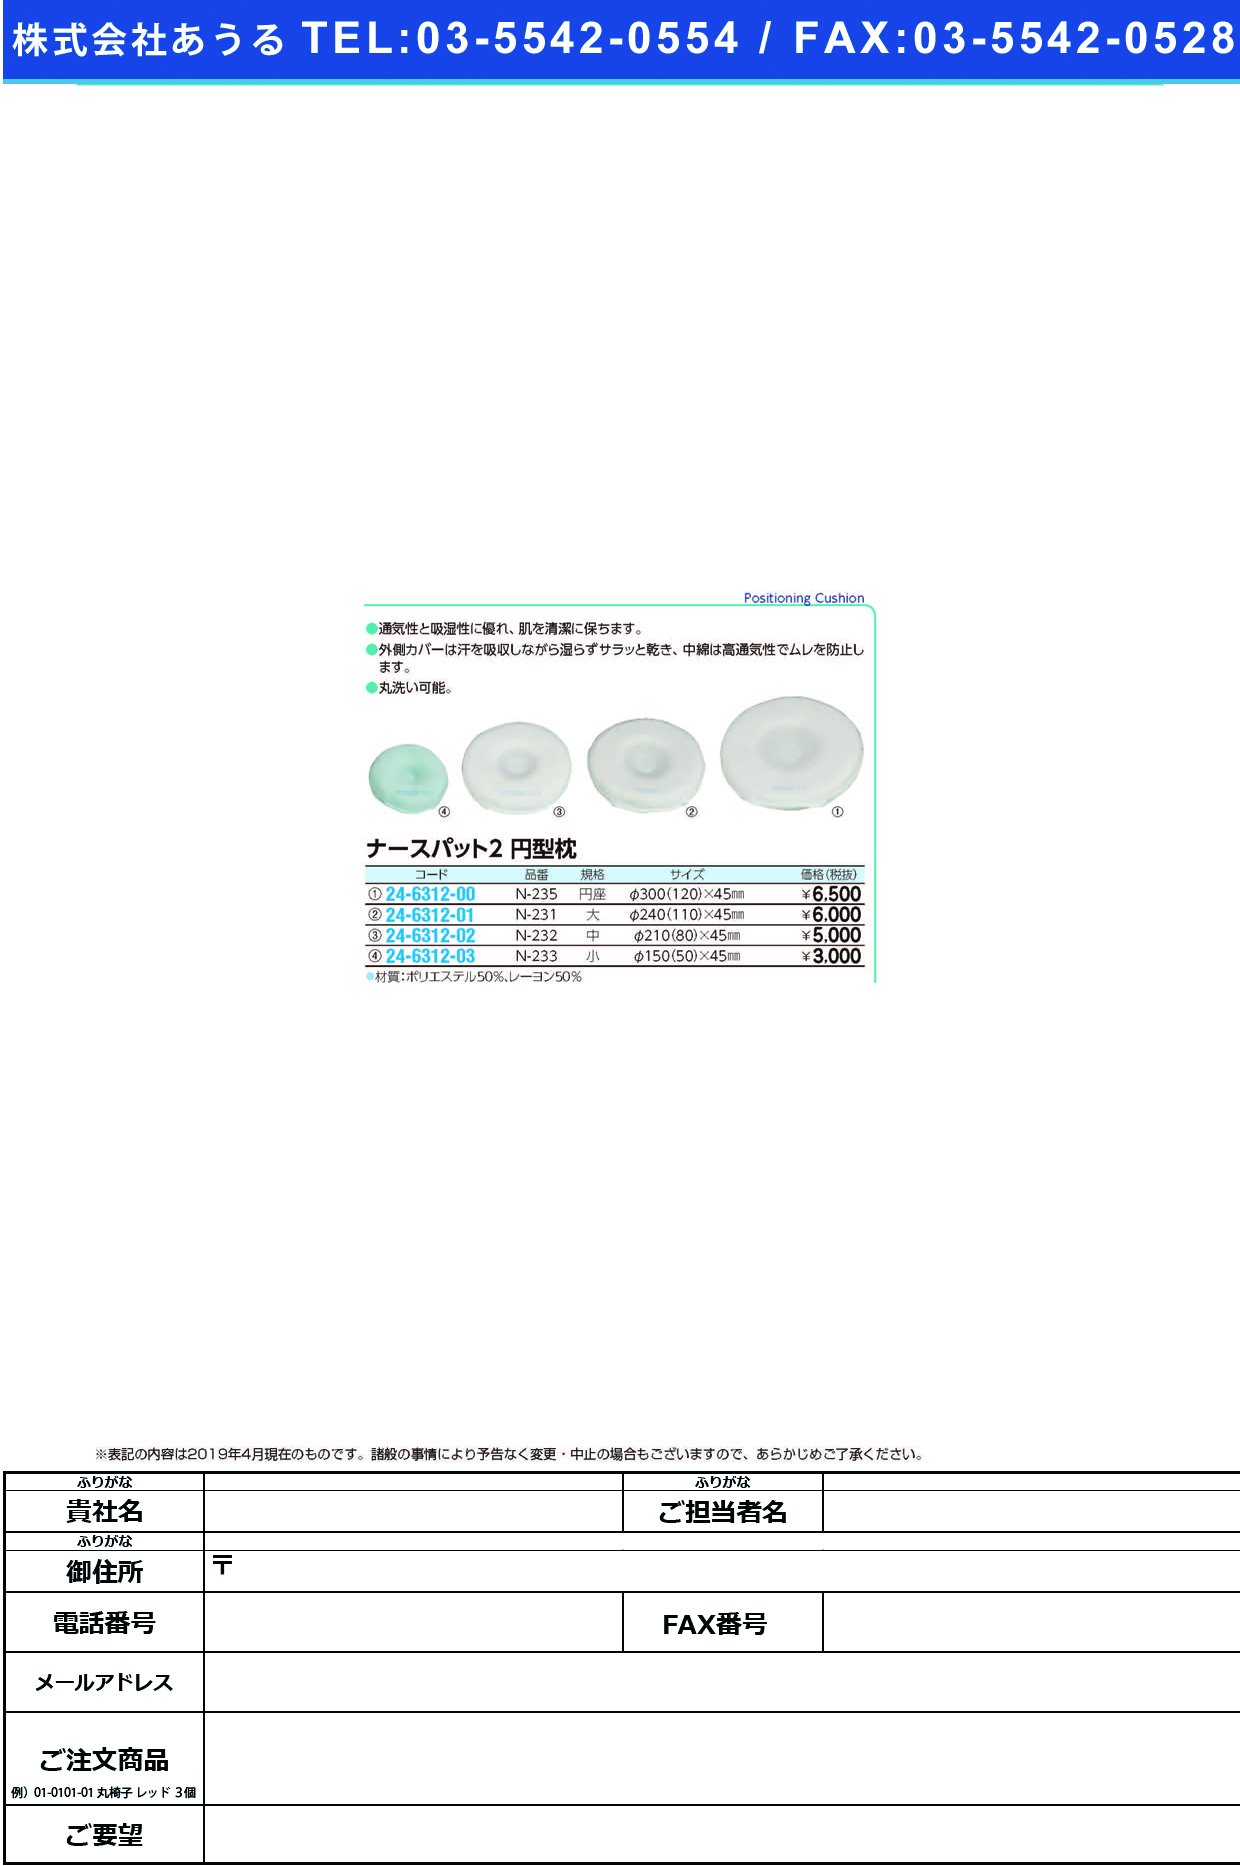 (24-6312-00)ナースパット２円型枕 N-235(ｴﾝｻﾞ) ﾅｰｽﾊﾟｯﾄ2ｴﾝｶﾞﾀﾏｸﾗ【1個単位】【2019年カタログ商品】